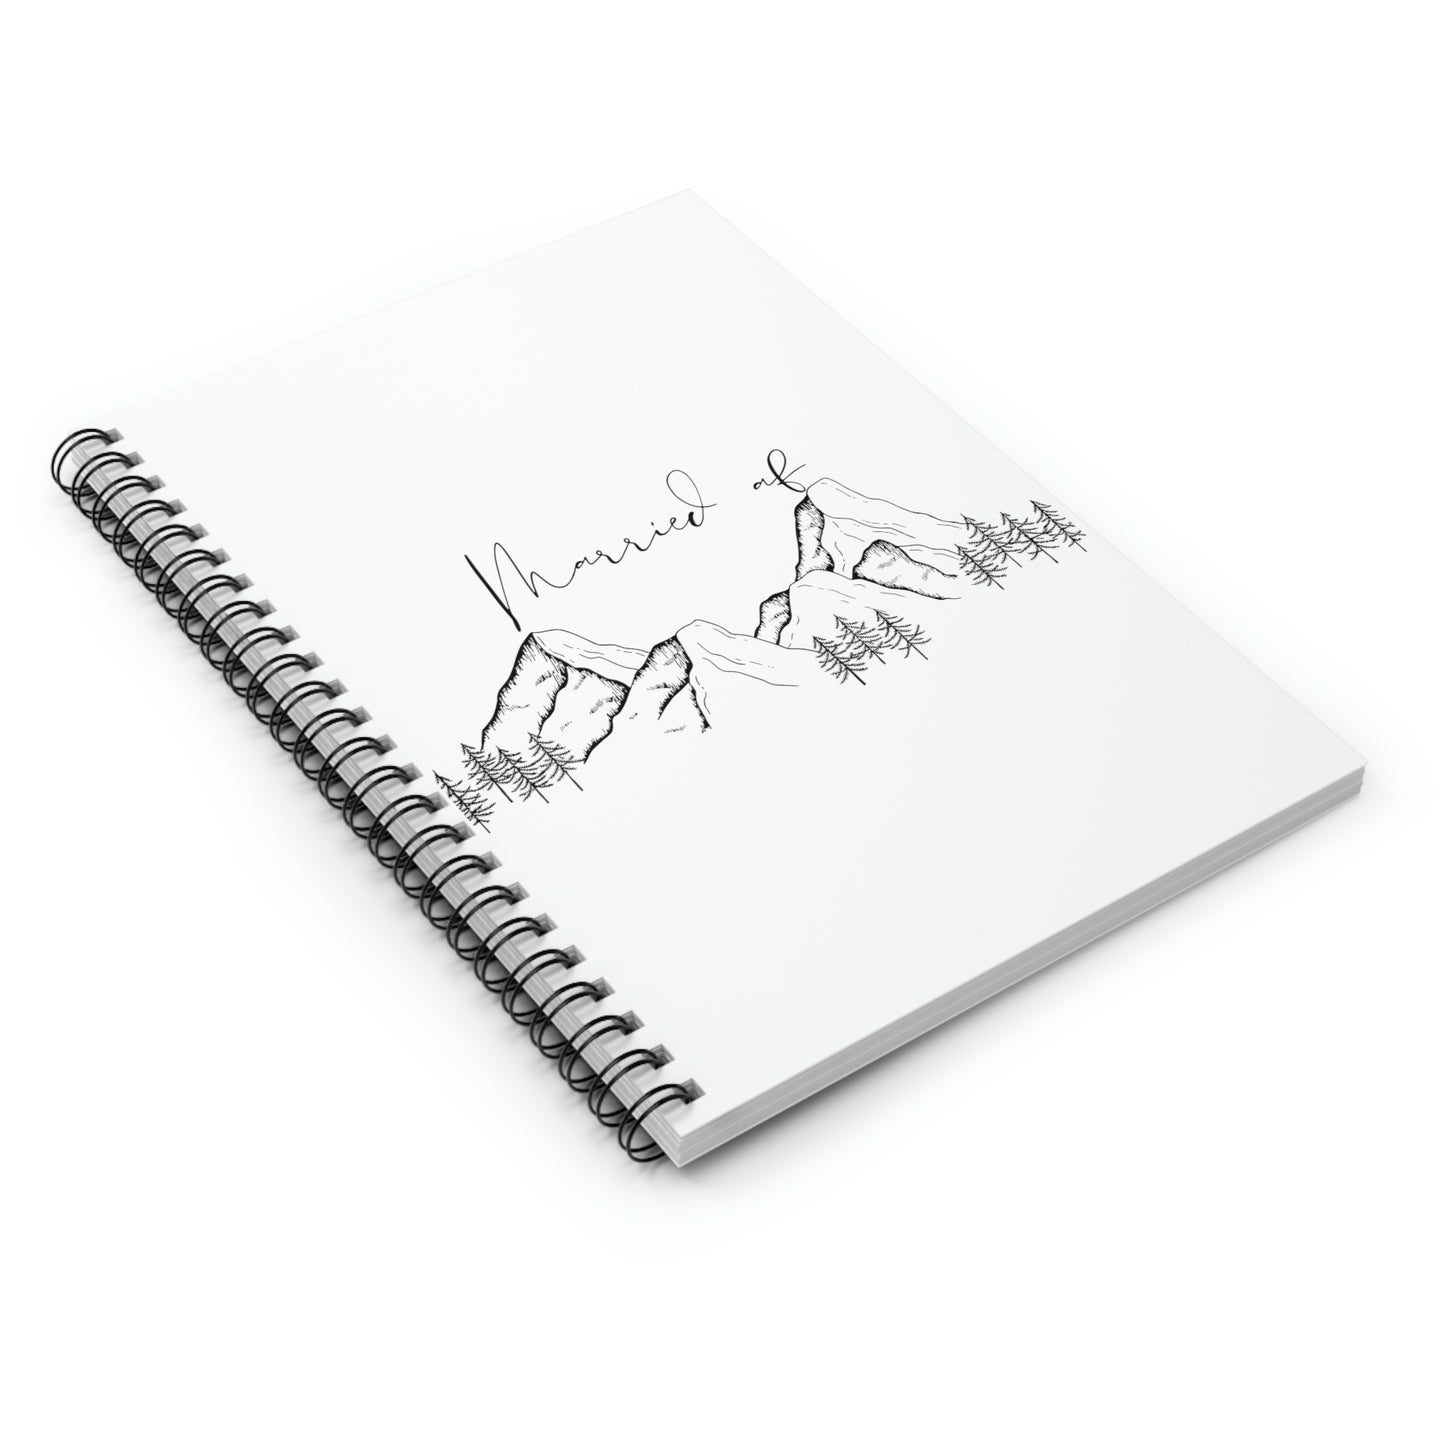 Married AF Spiral Notebook - Ruled Line